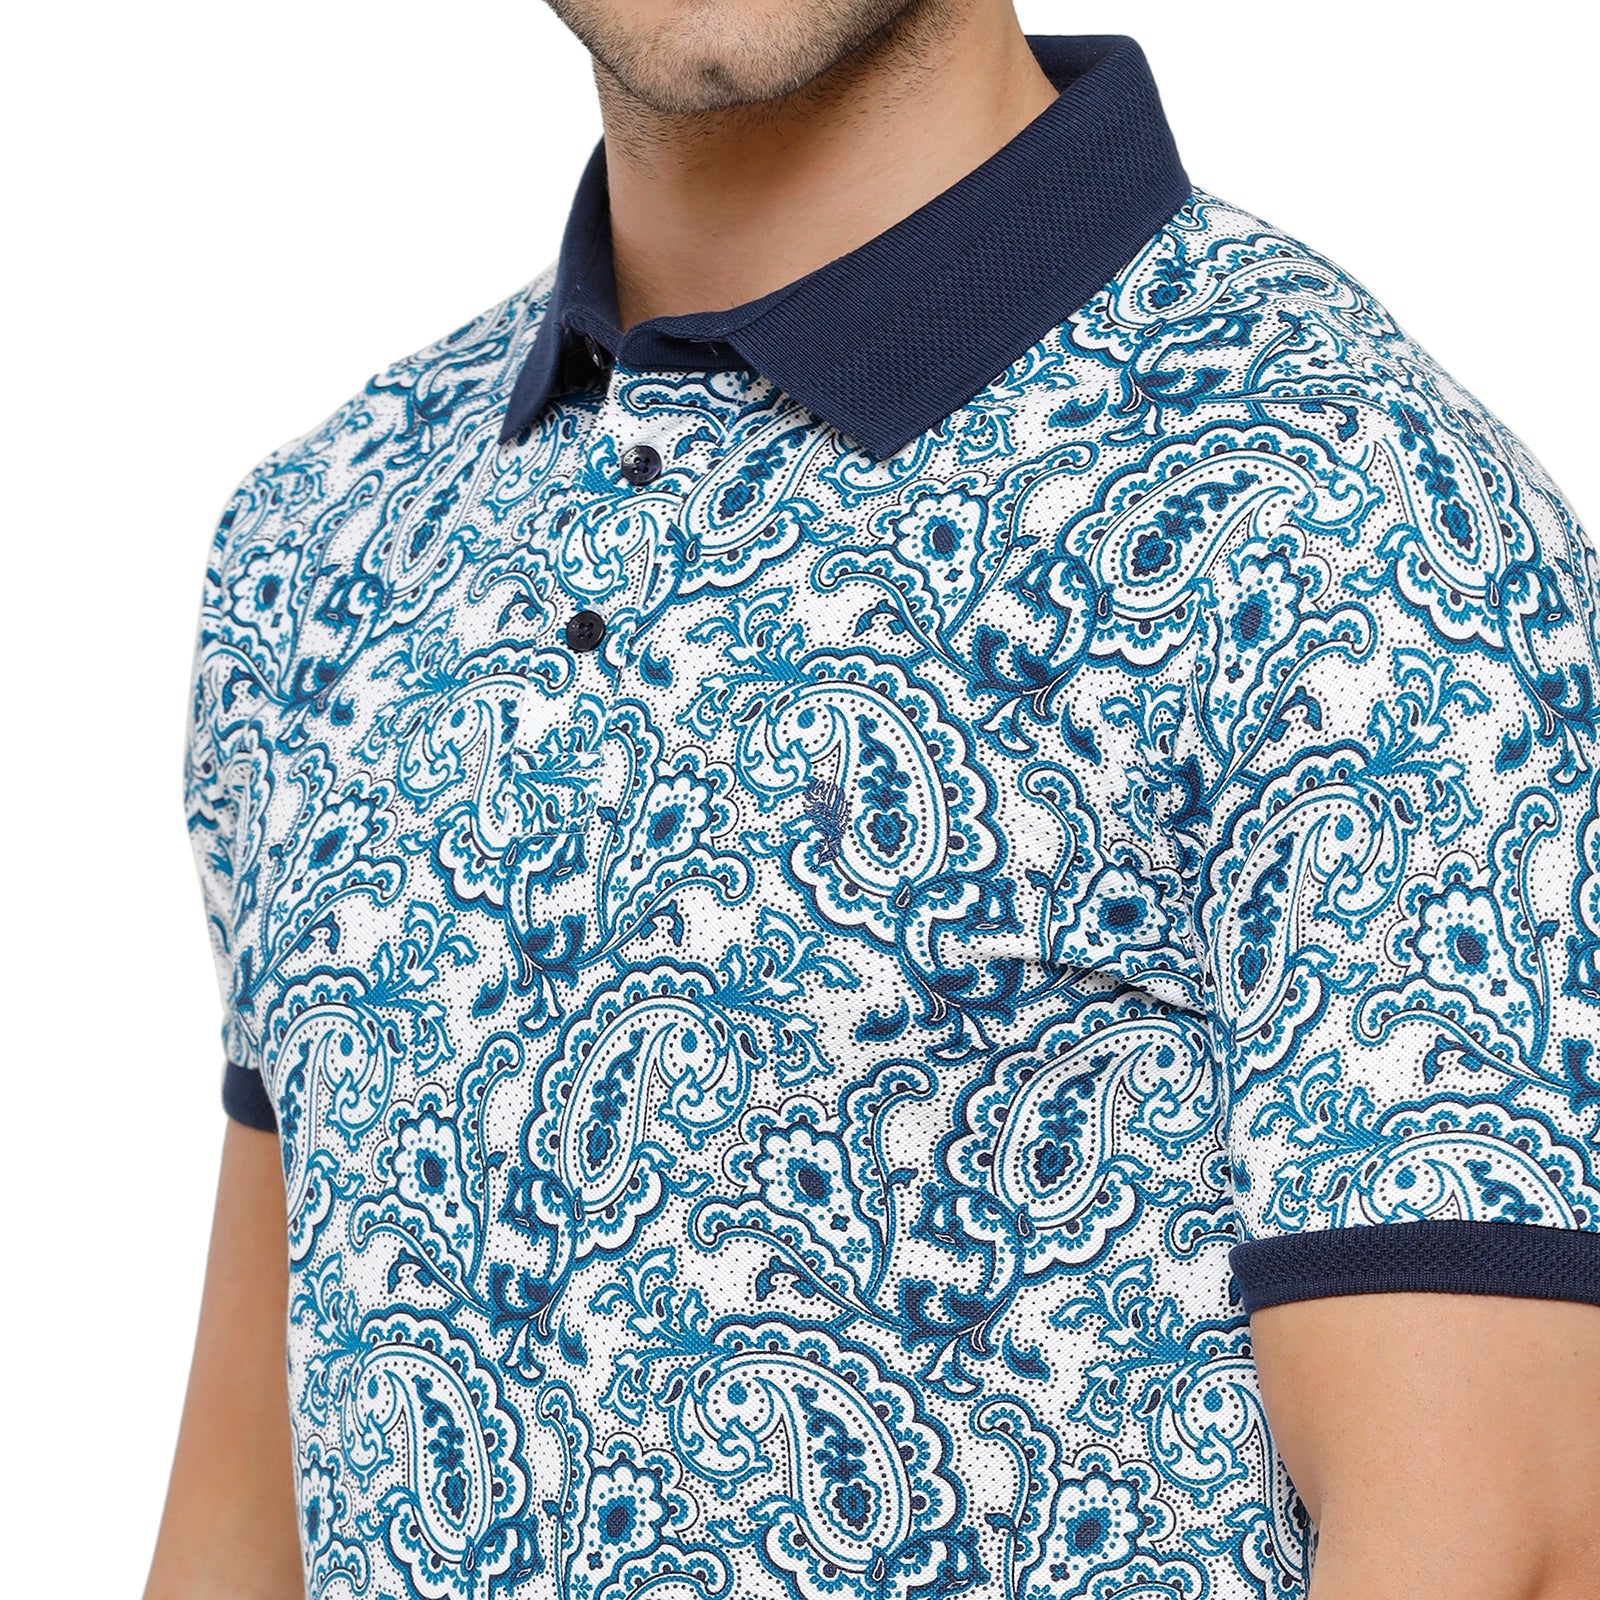 Swiss Club Mens Printed Half Sleeve Slim Fit Aqua Blue Colour T-Shirt - STAG - 205 A Shirts Swiss Club 